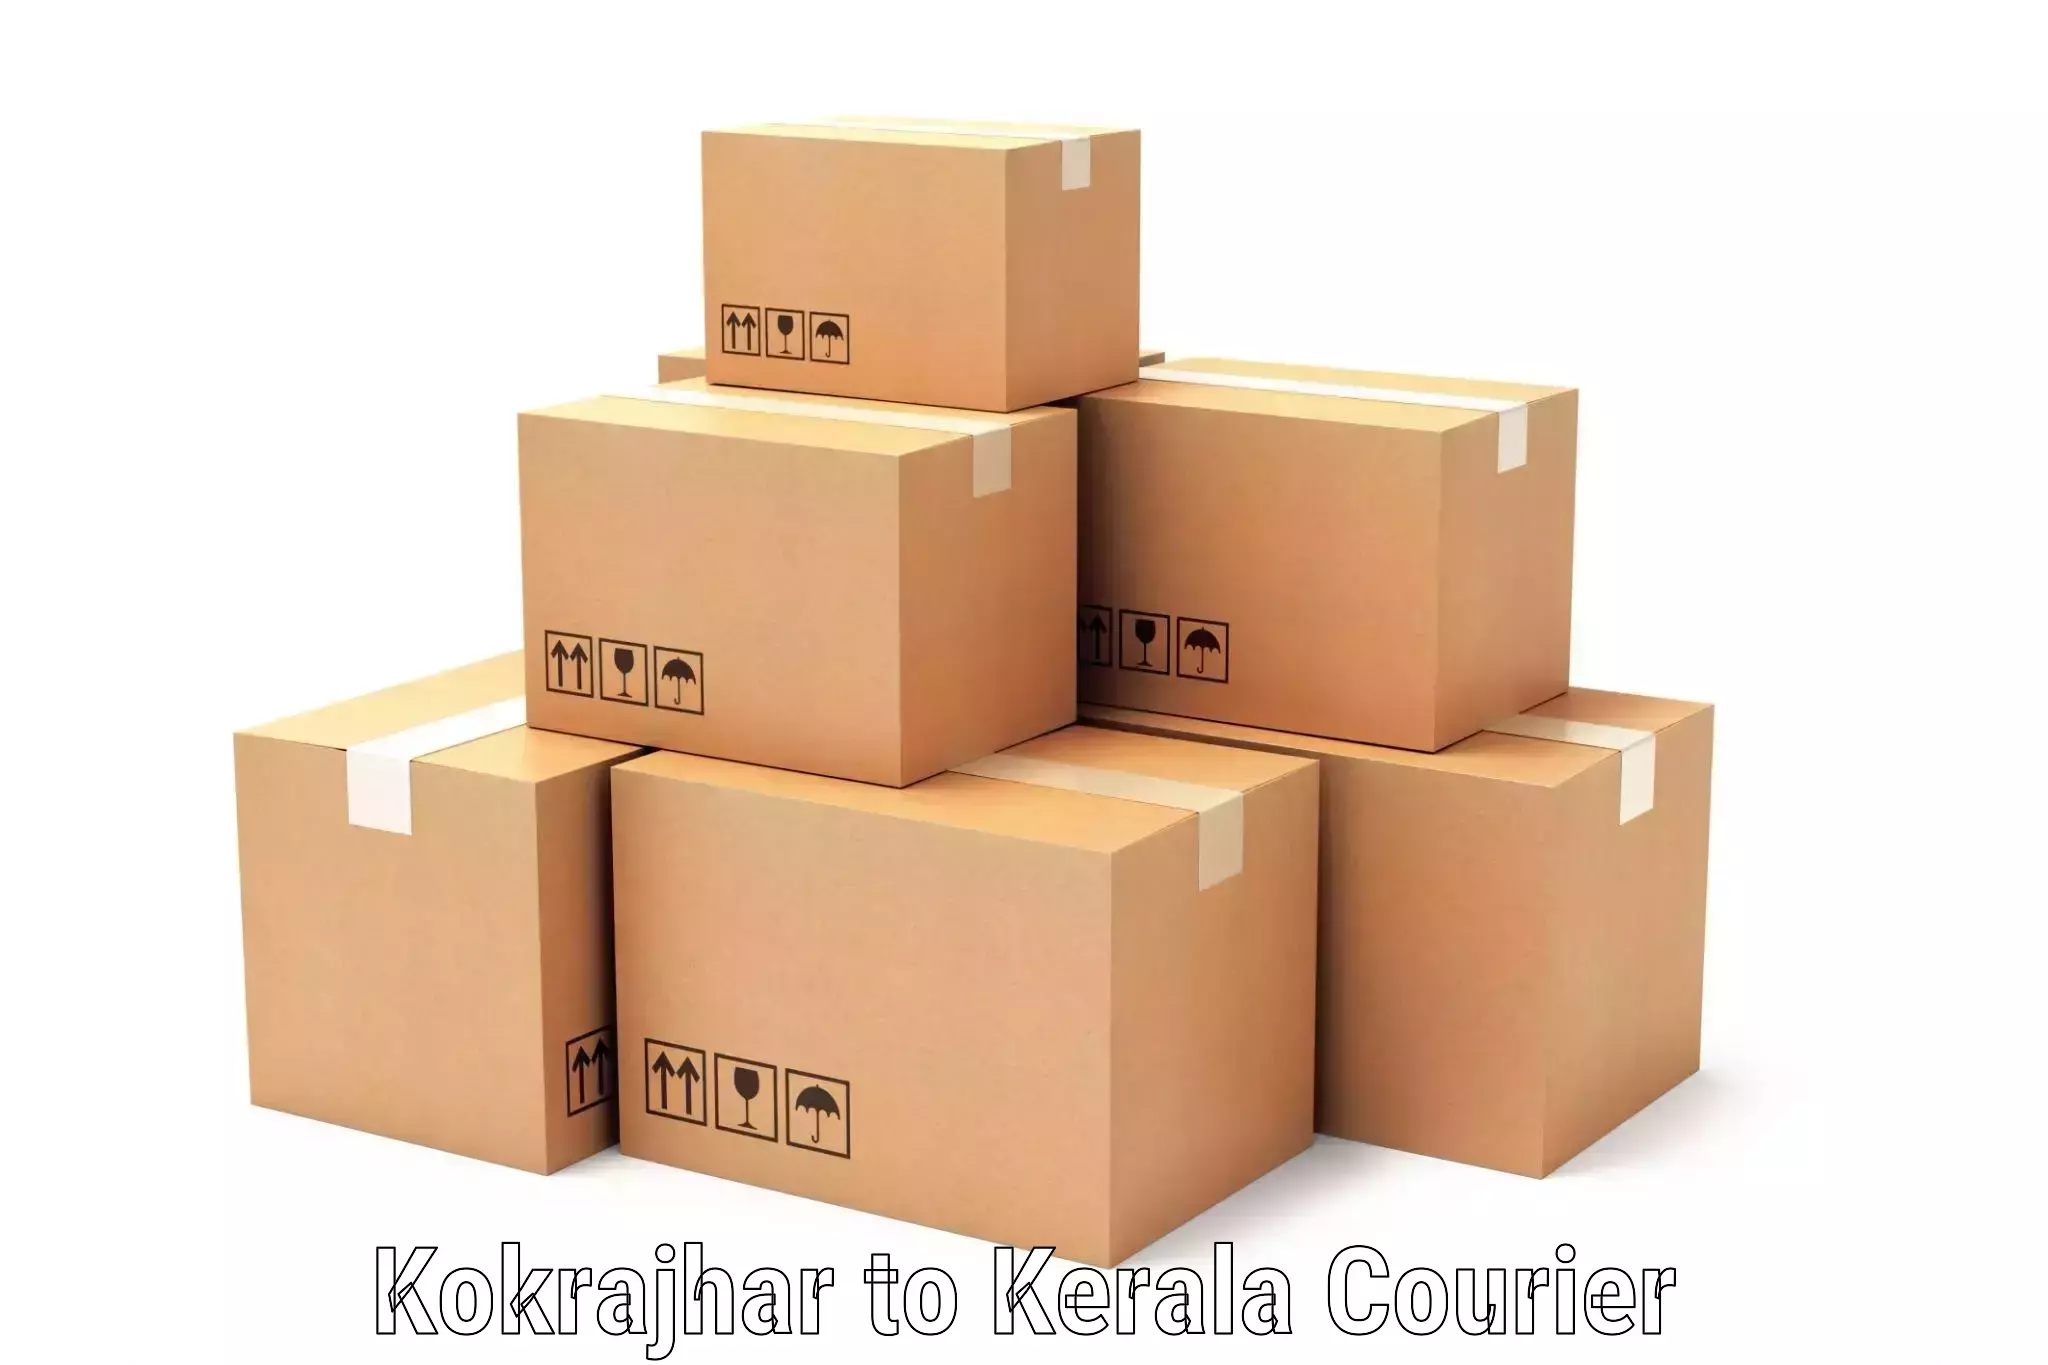 User-friendly courier app Kokrajhar to Kasaragod